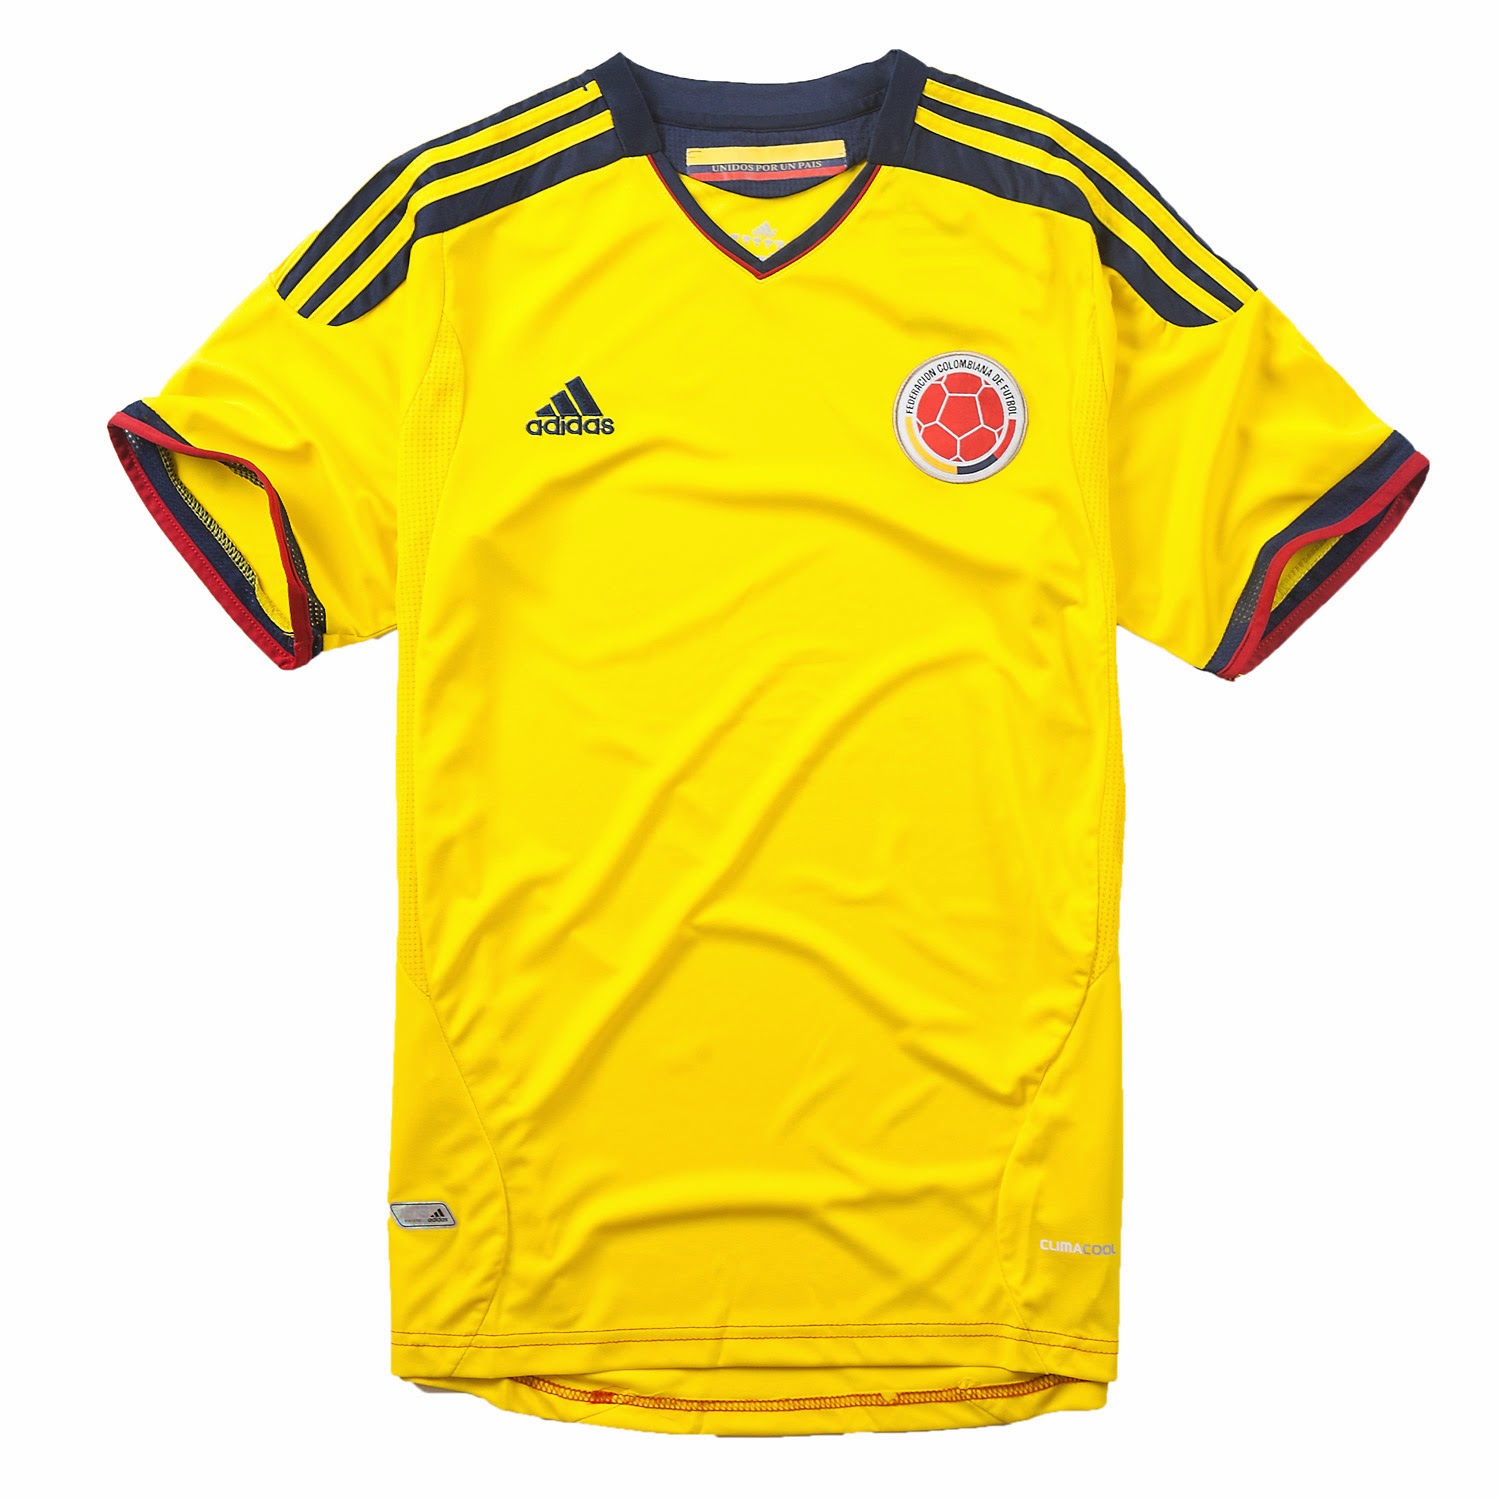 Equipaciones futbol 2014 baratas: Esta es la Nueva camiseta de Colombia baratas para la campaña ...